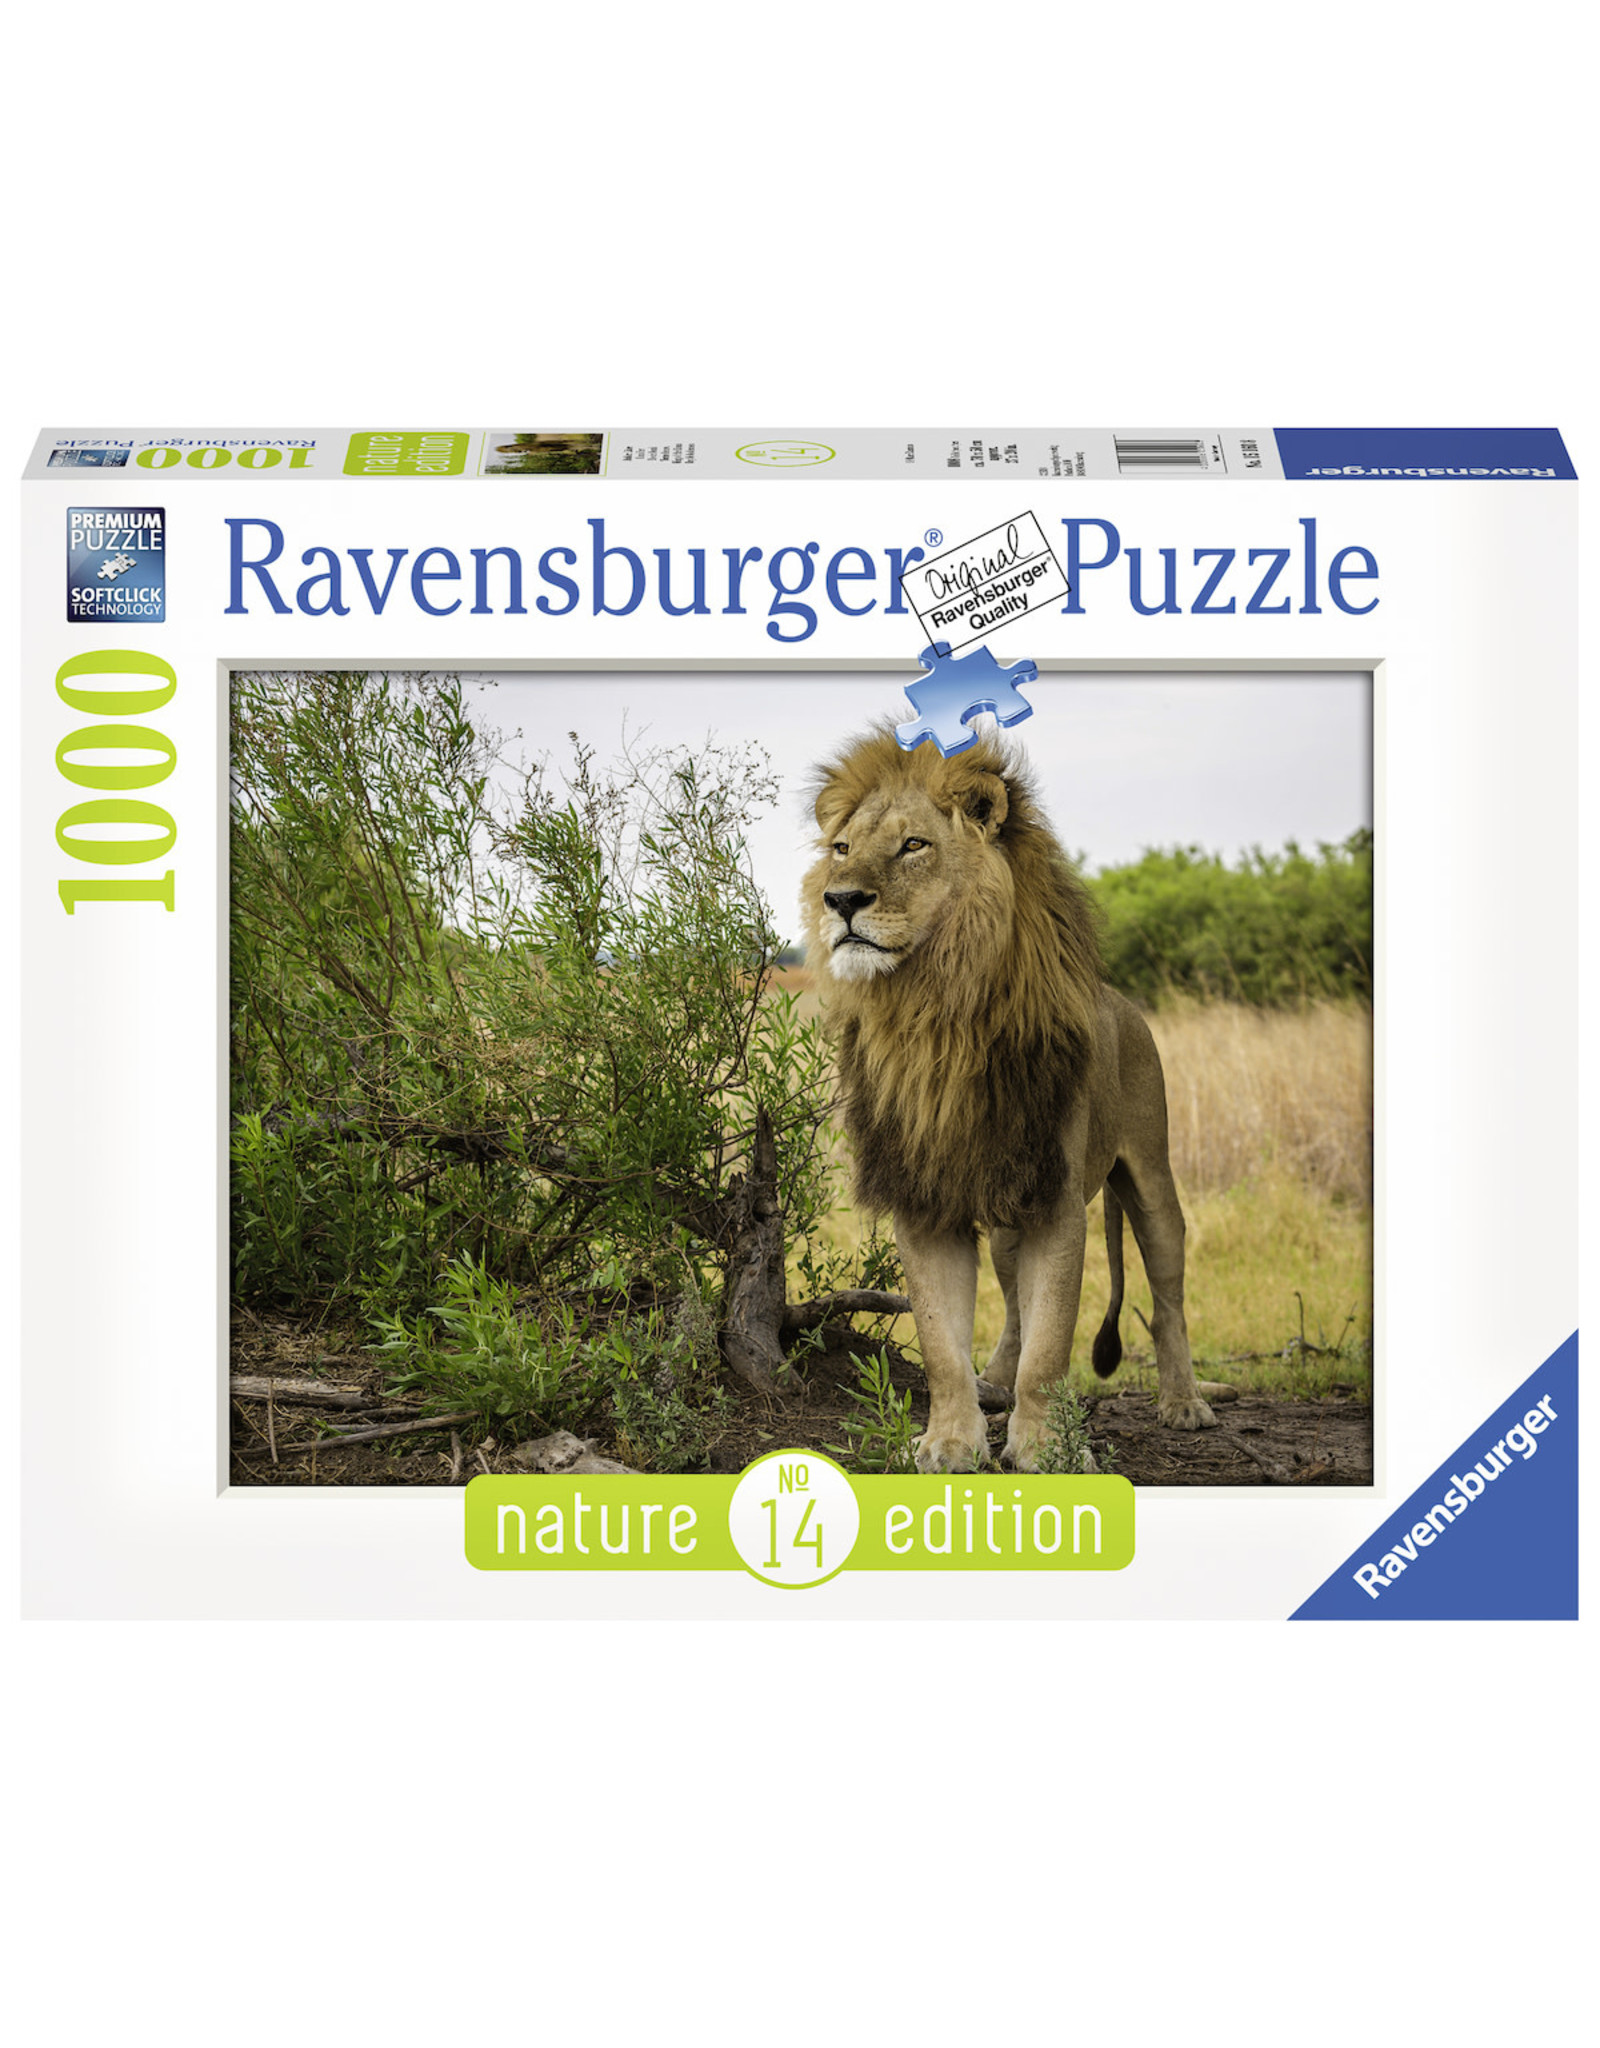 Ravensburger Ravensburger Puzzel King Of The Lions 1000 stukjes